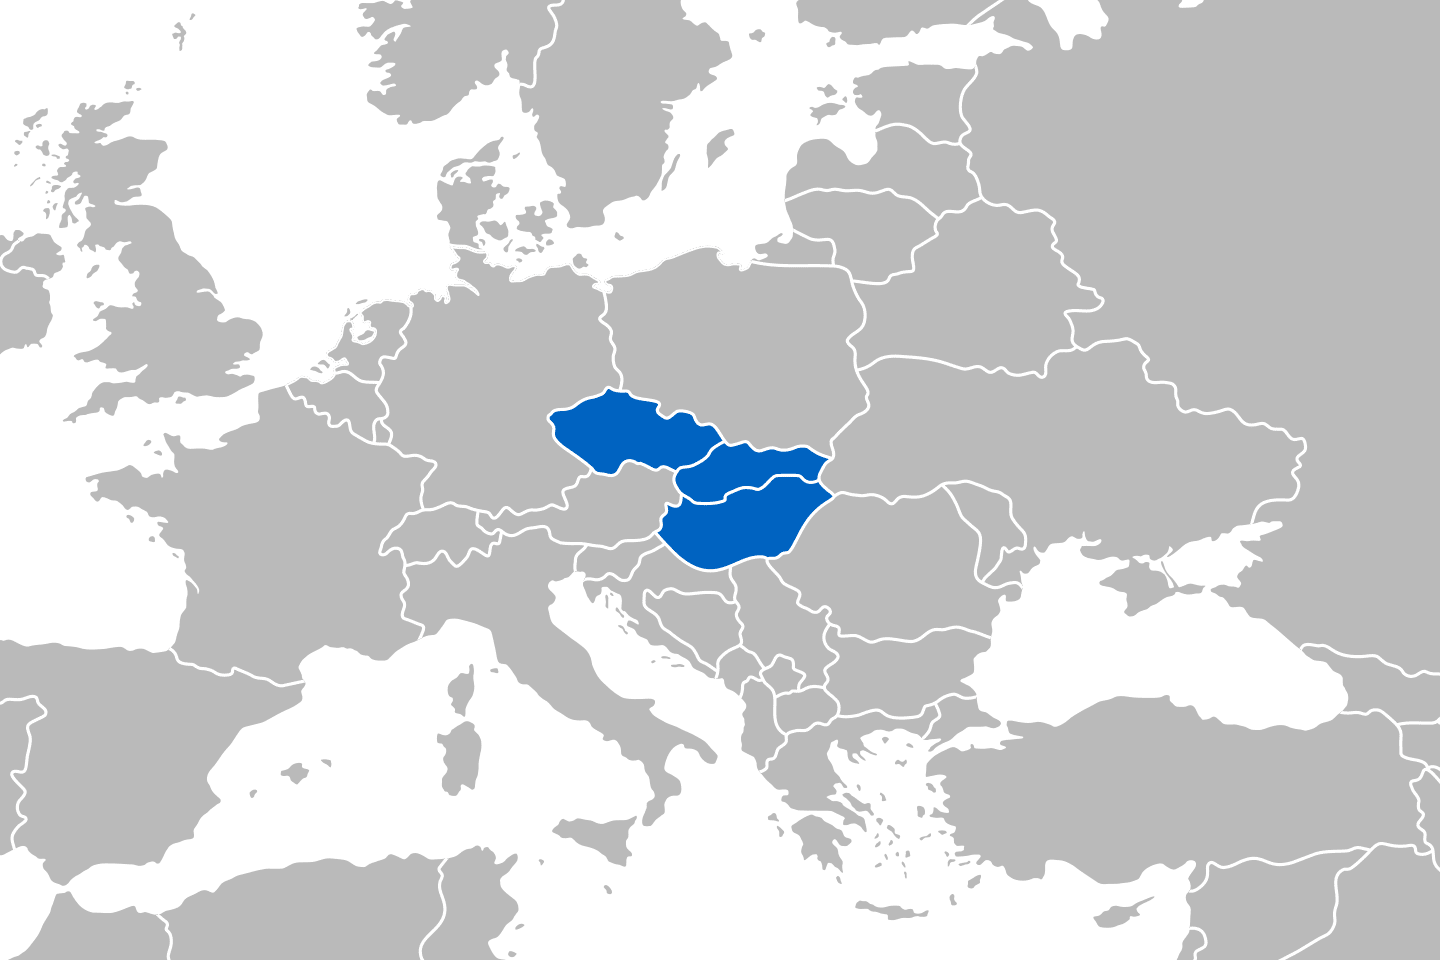 mapa przedstawiająca region Grupa Wyszehradzka